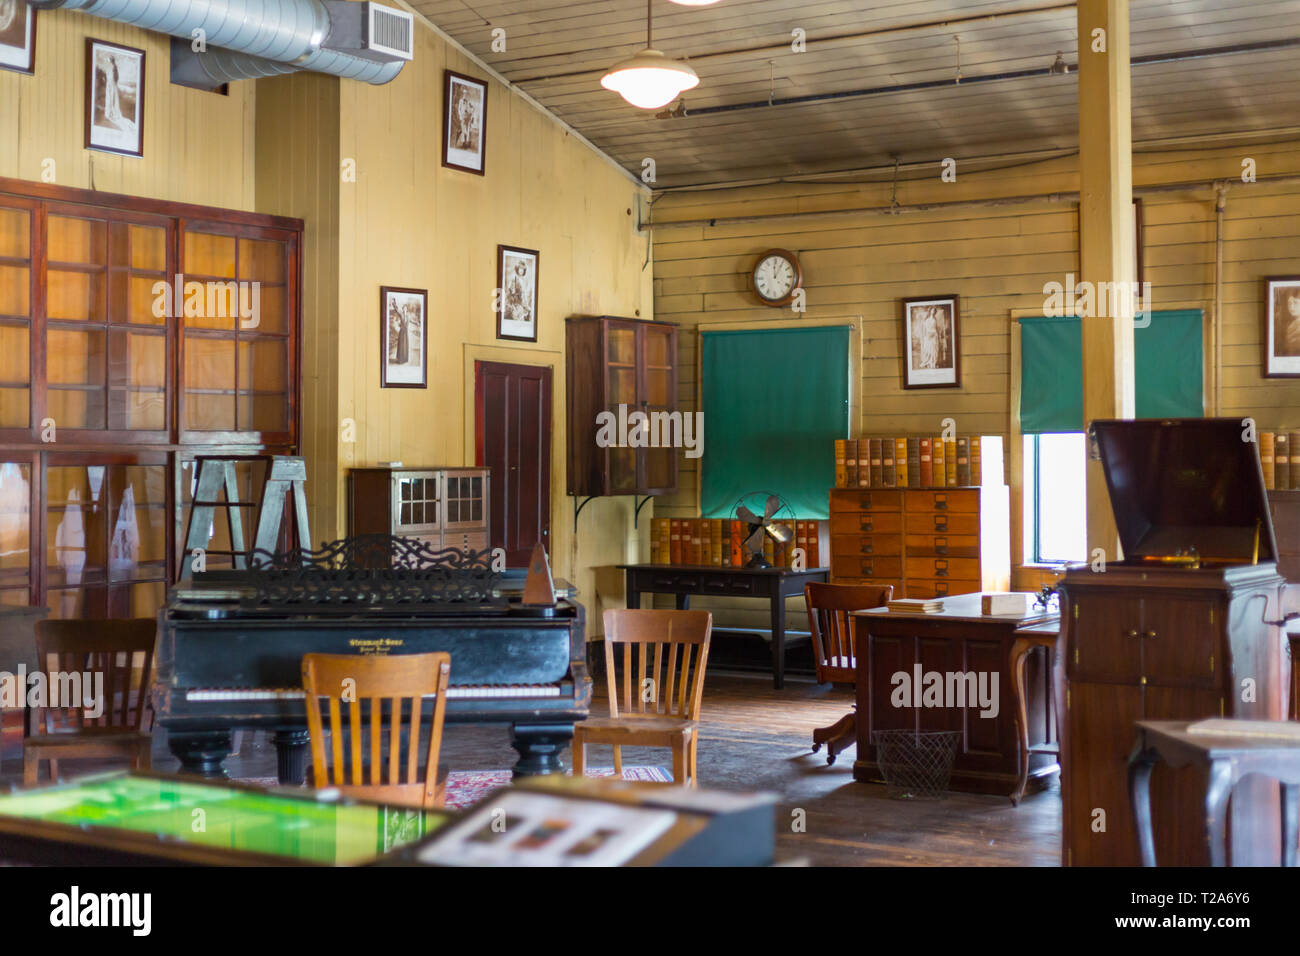 West Orange, Nueva Jersey, 19 de septiembre de 2018:Thomas Edison National Historical Park conserva el laboratorio de Thomas Edison y residencia, Glenmont Foto de stock